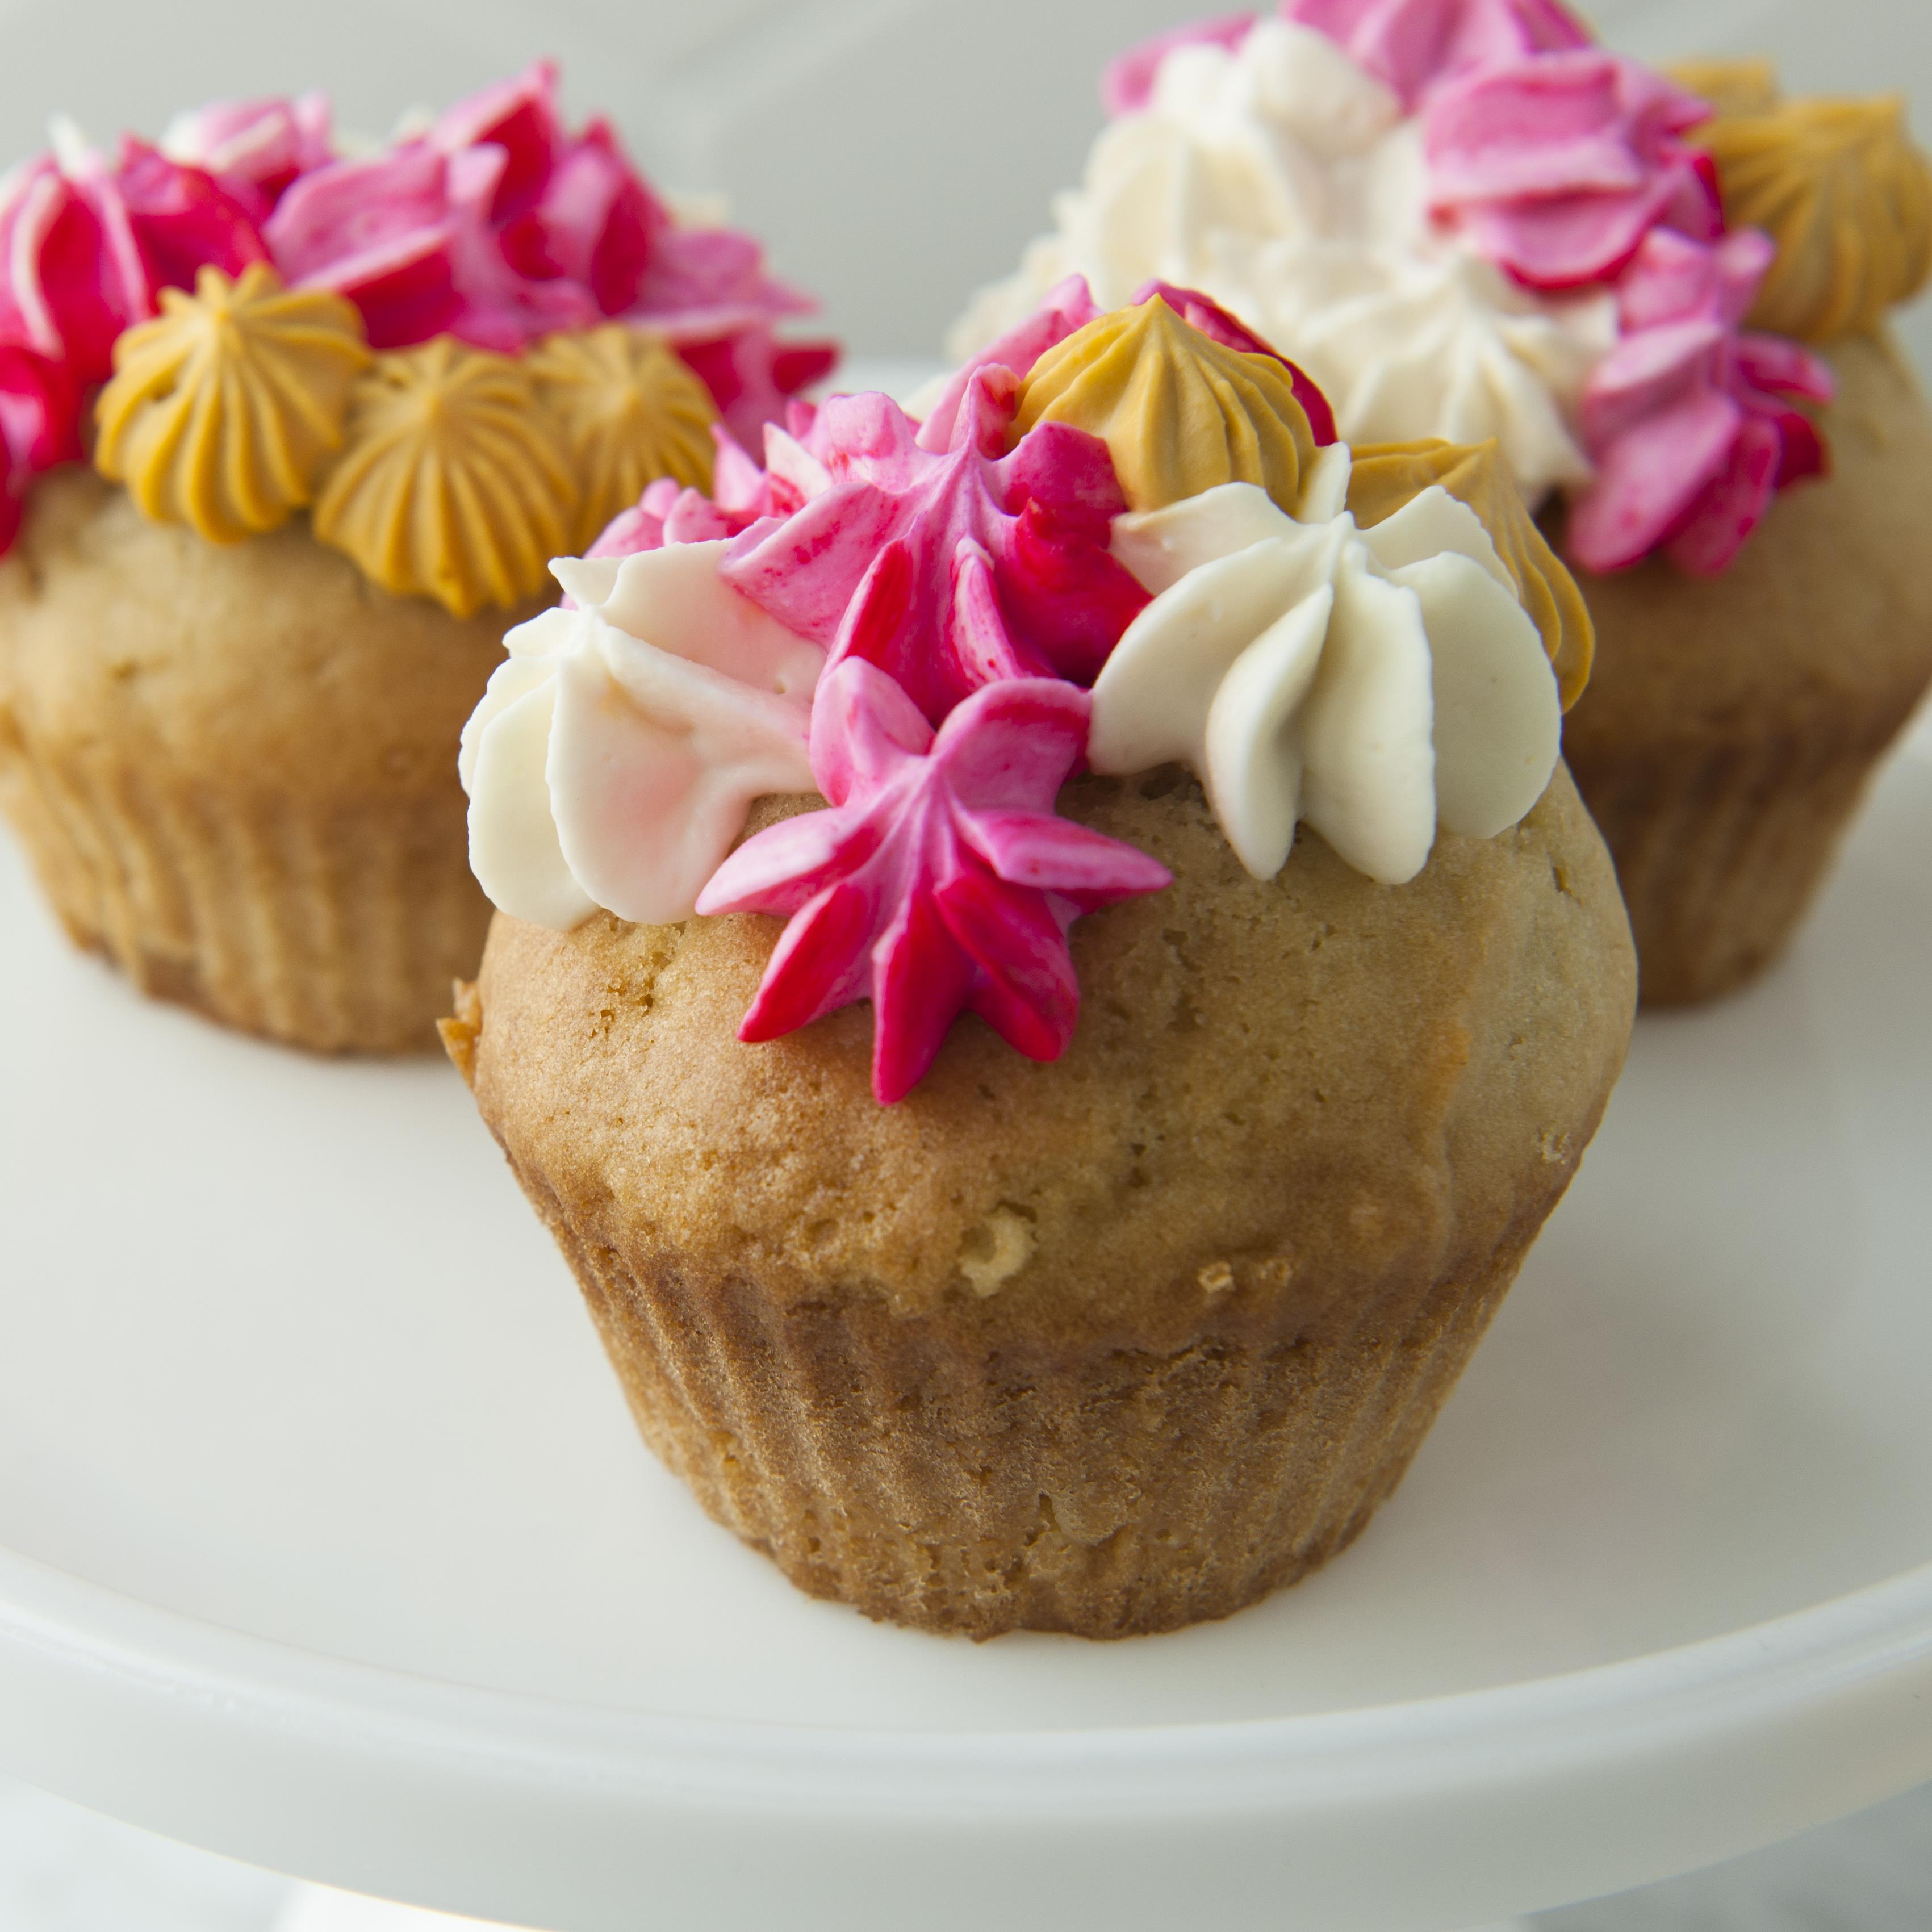 Douilles froufrou, le tutoriel glaçage de cupcakes - Féerie Cake blog